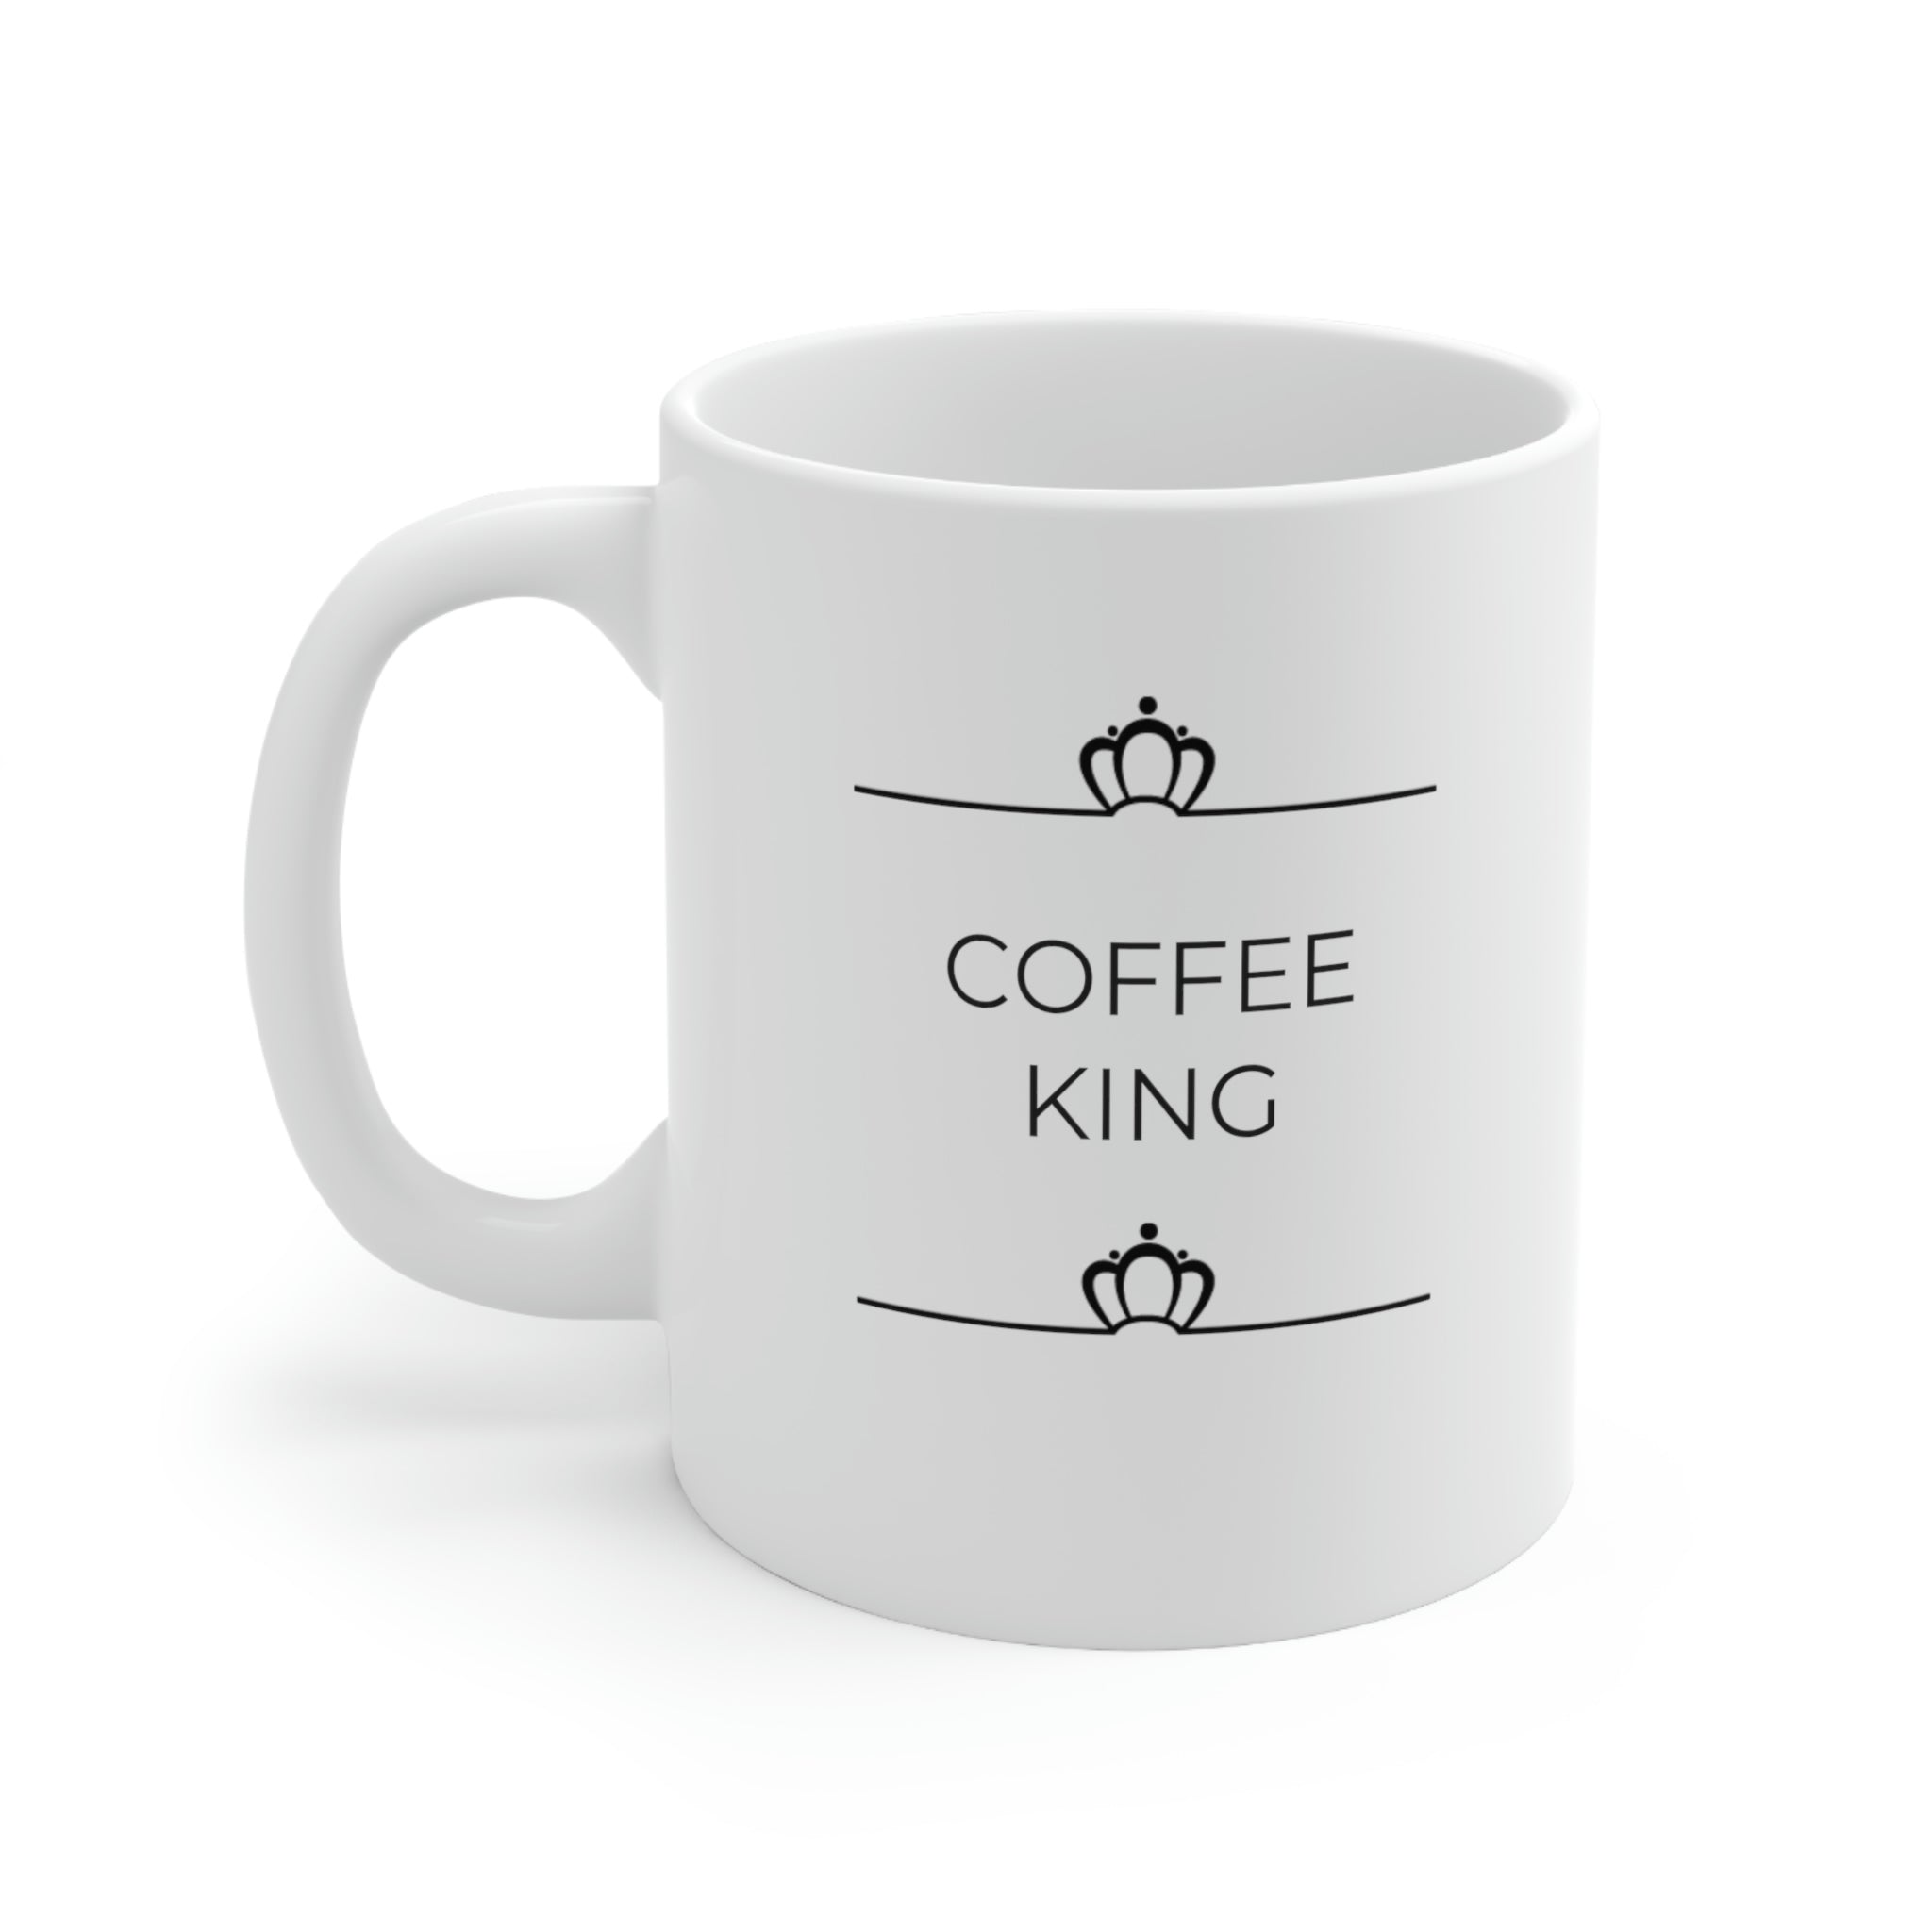 Coffee King Ceramic Mug 11oz